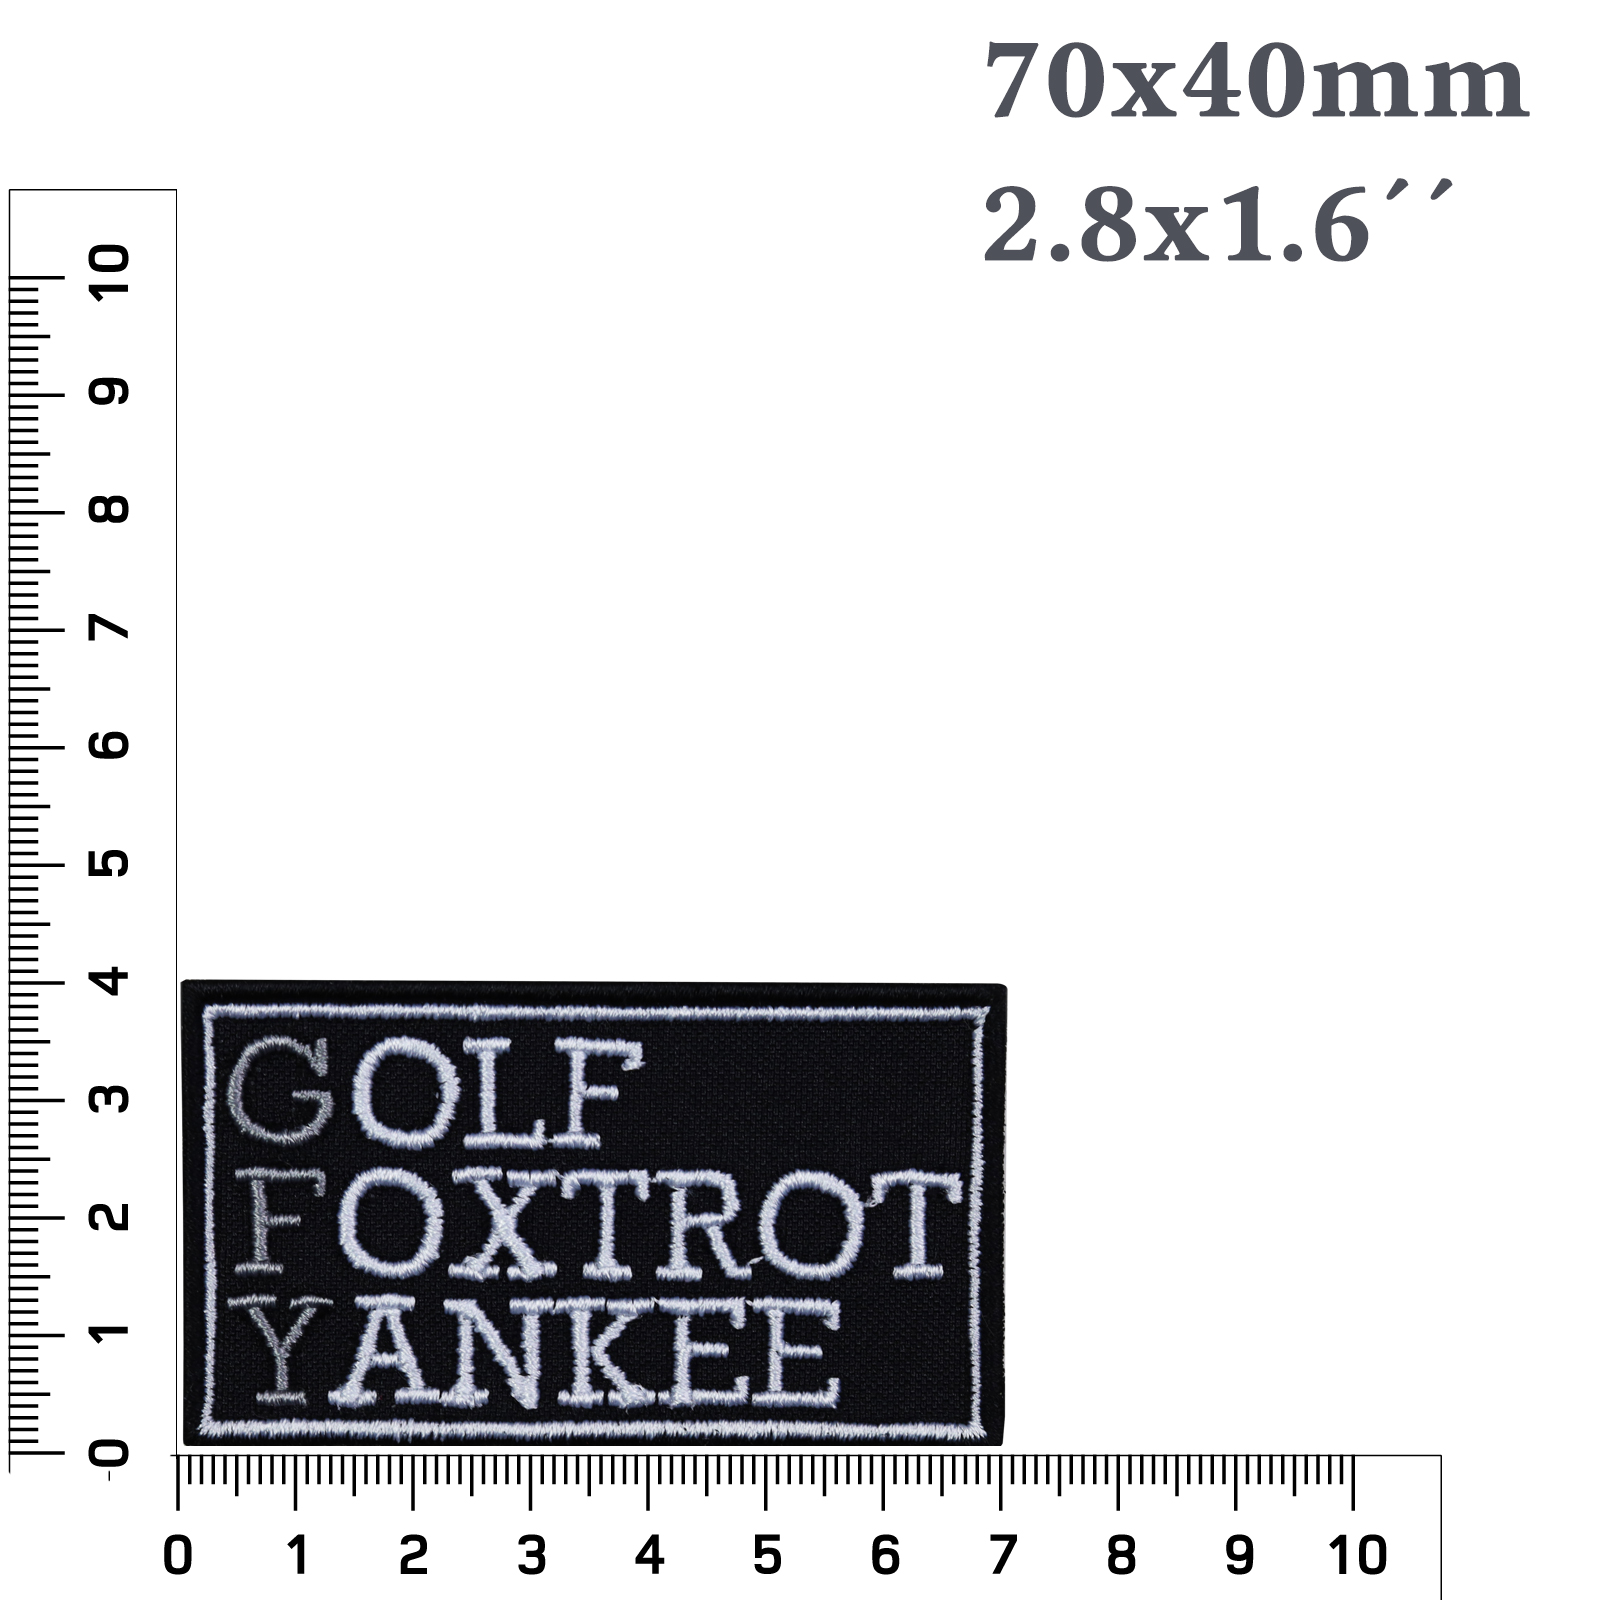 Golf Foxtrot Yankee - Patch